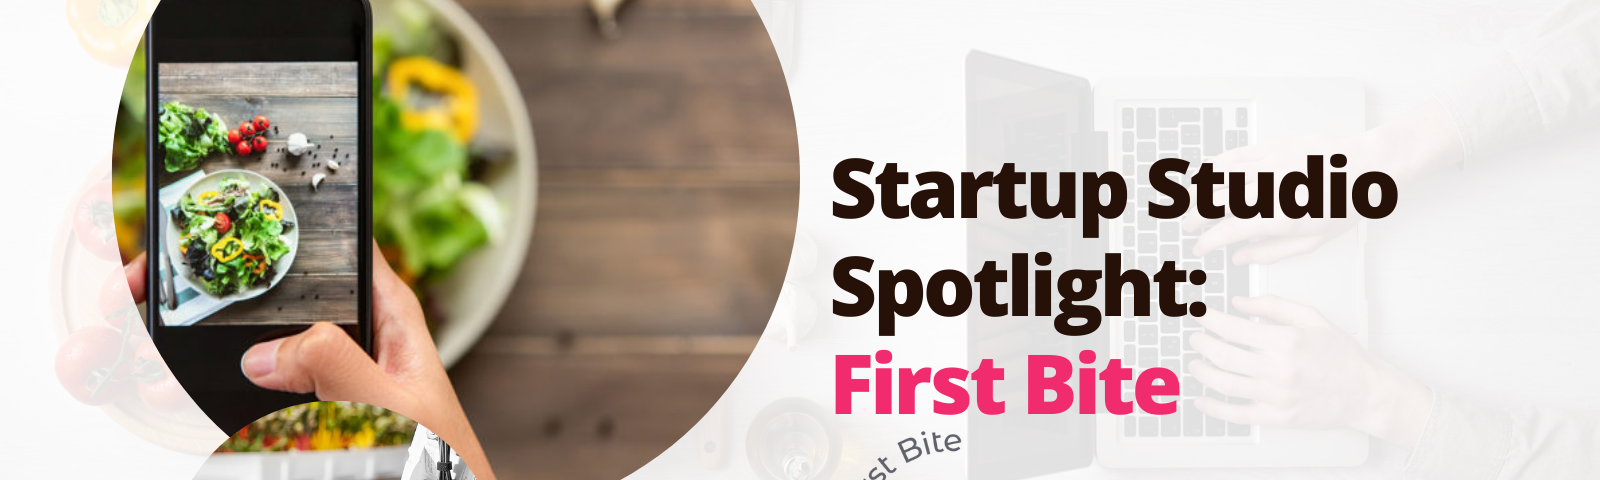 First Bite Spotlight: By Startup Studio Spotlight